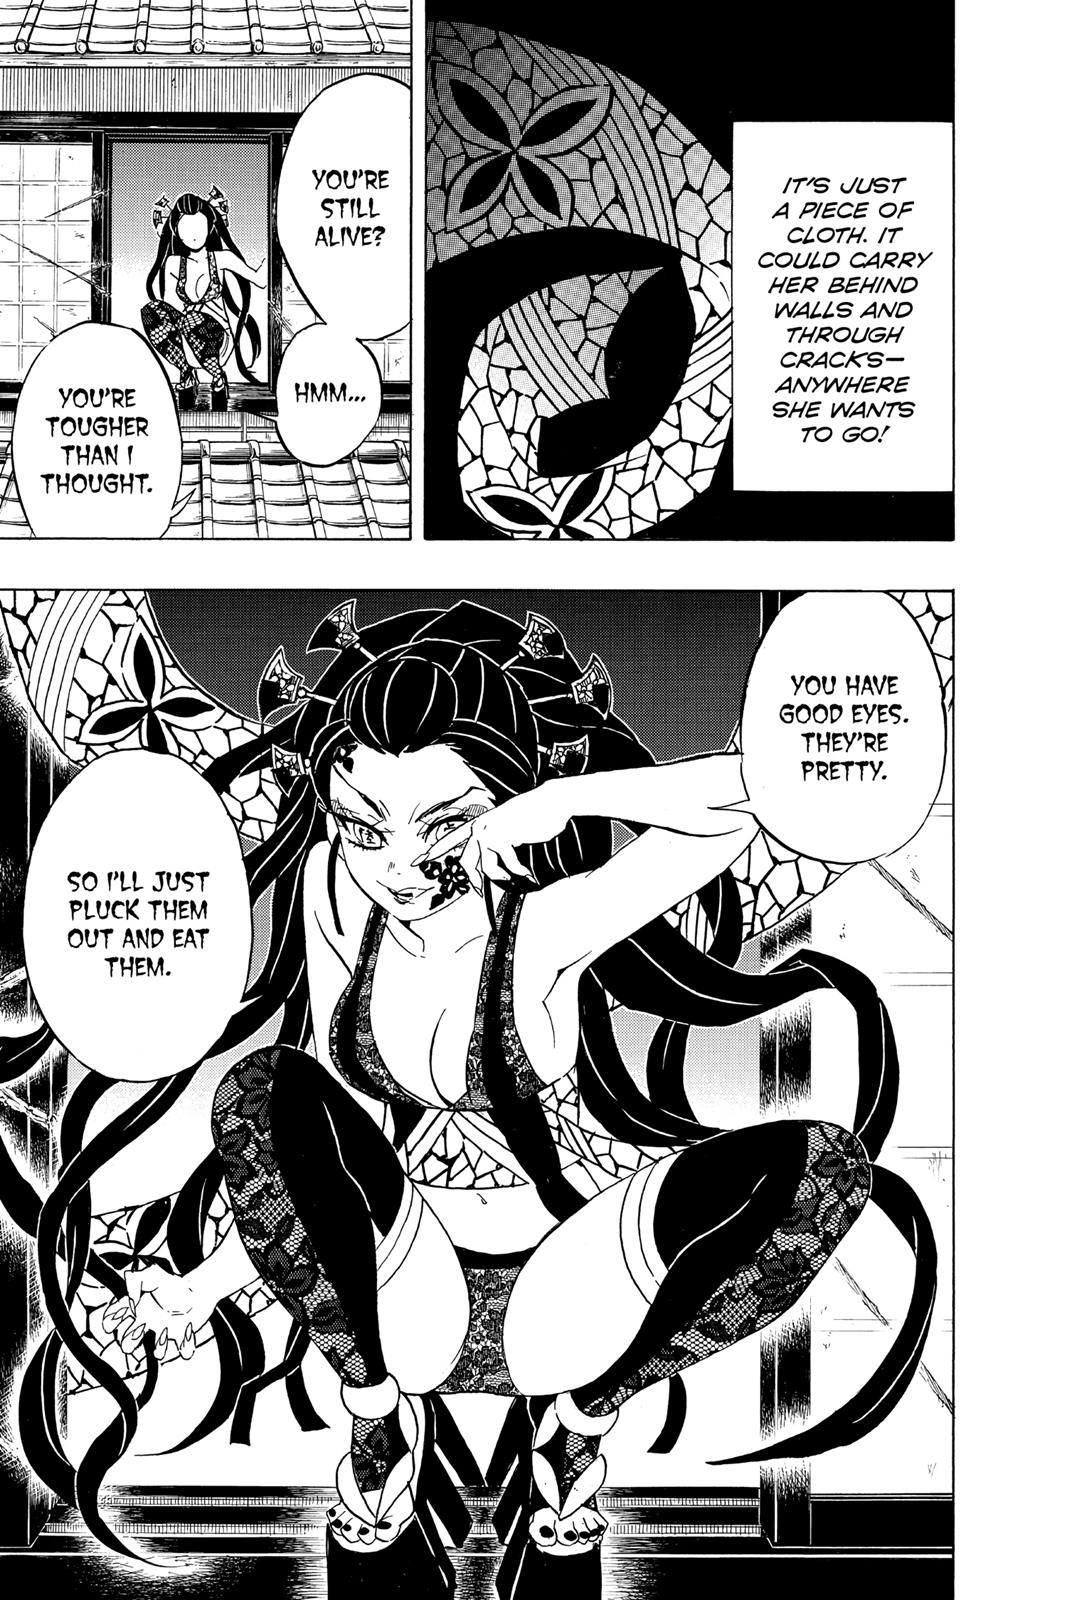 Demon Slayer Manga Manga Chapter - 76 - image 11